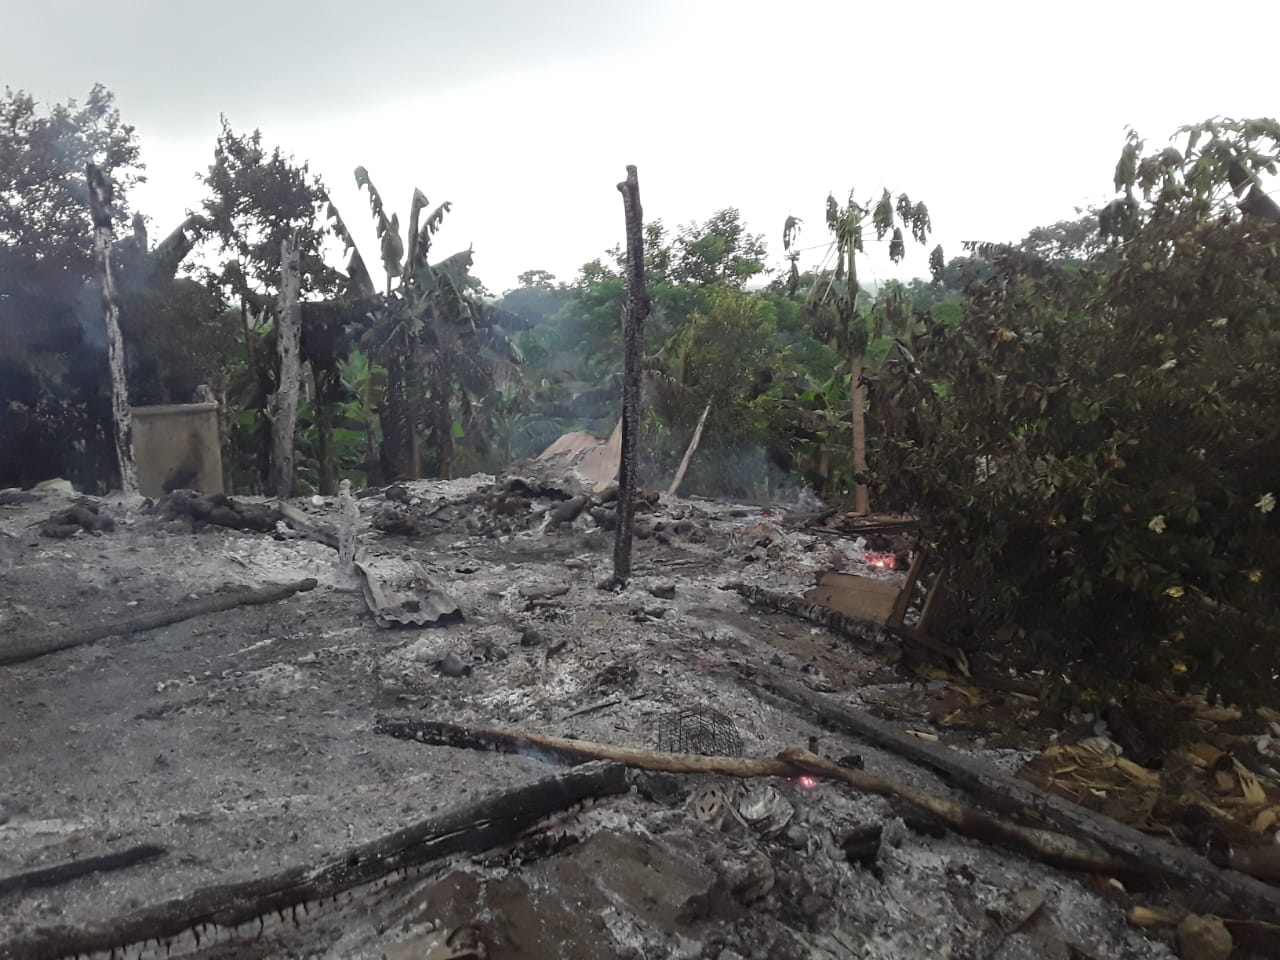  Incendio consumió vivienda en zona rural de Moñitos